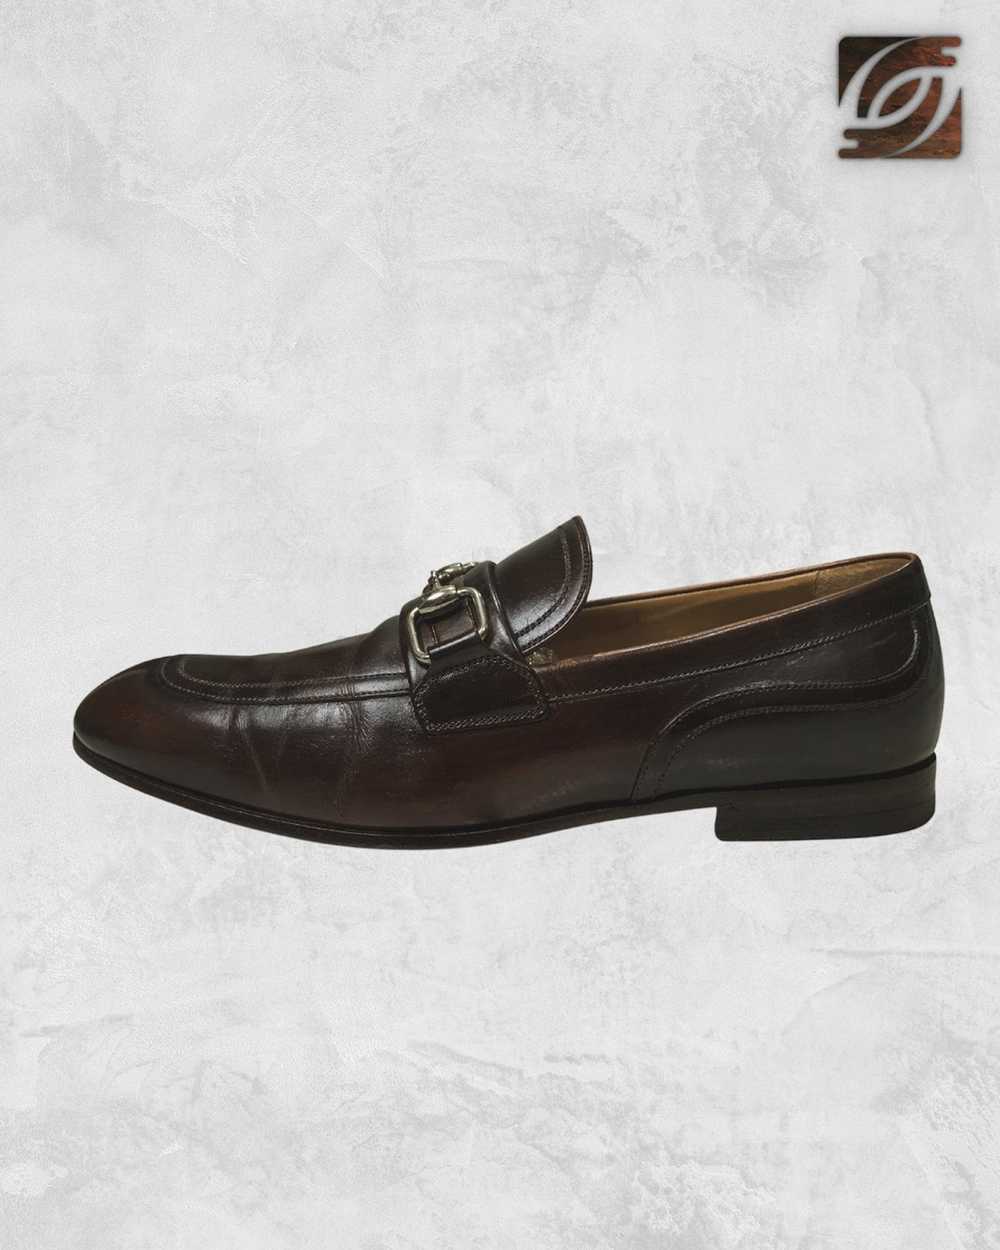 Gucci Horsebit Jordaan Low Heel Loafers - image 2